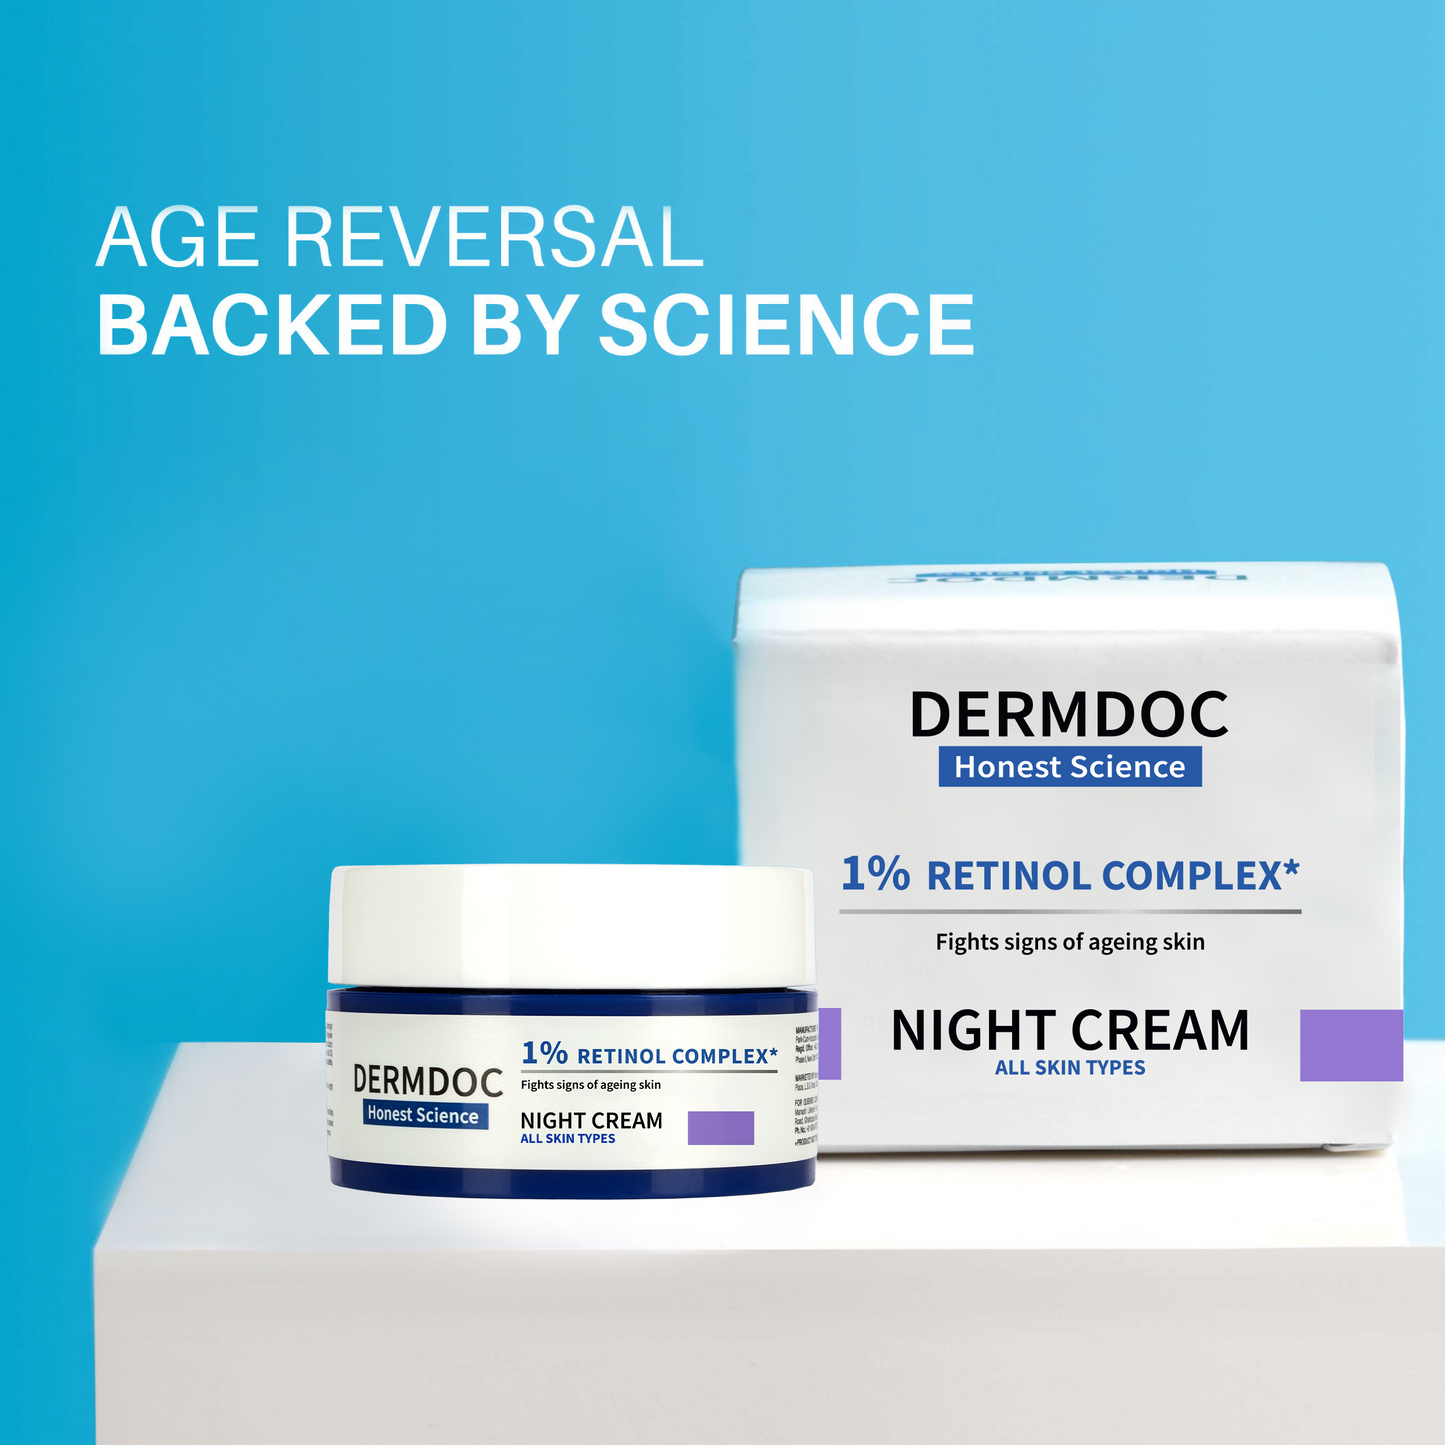 DERMDOC 1% Retinol Complex Night Cream (25g)